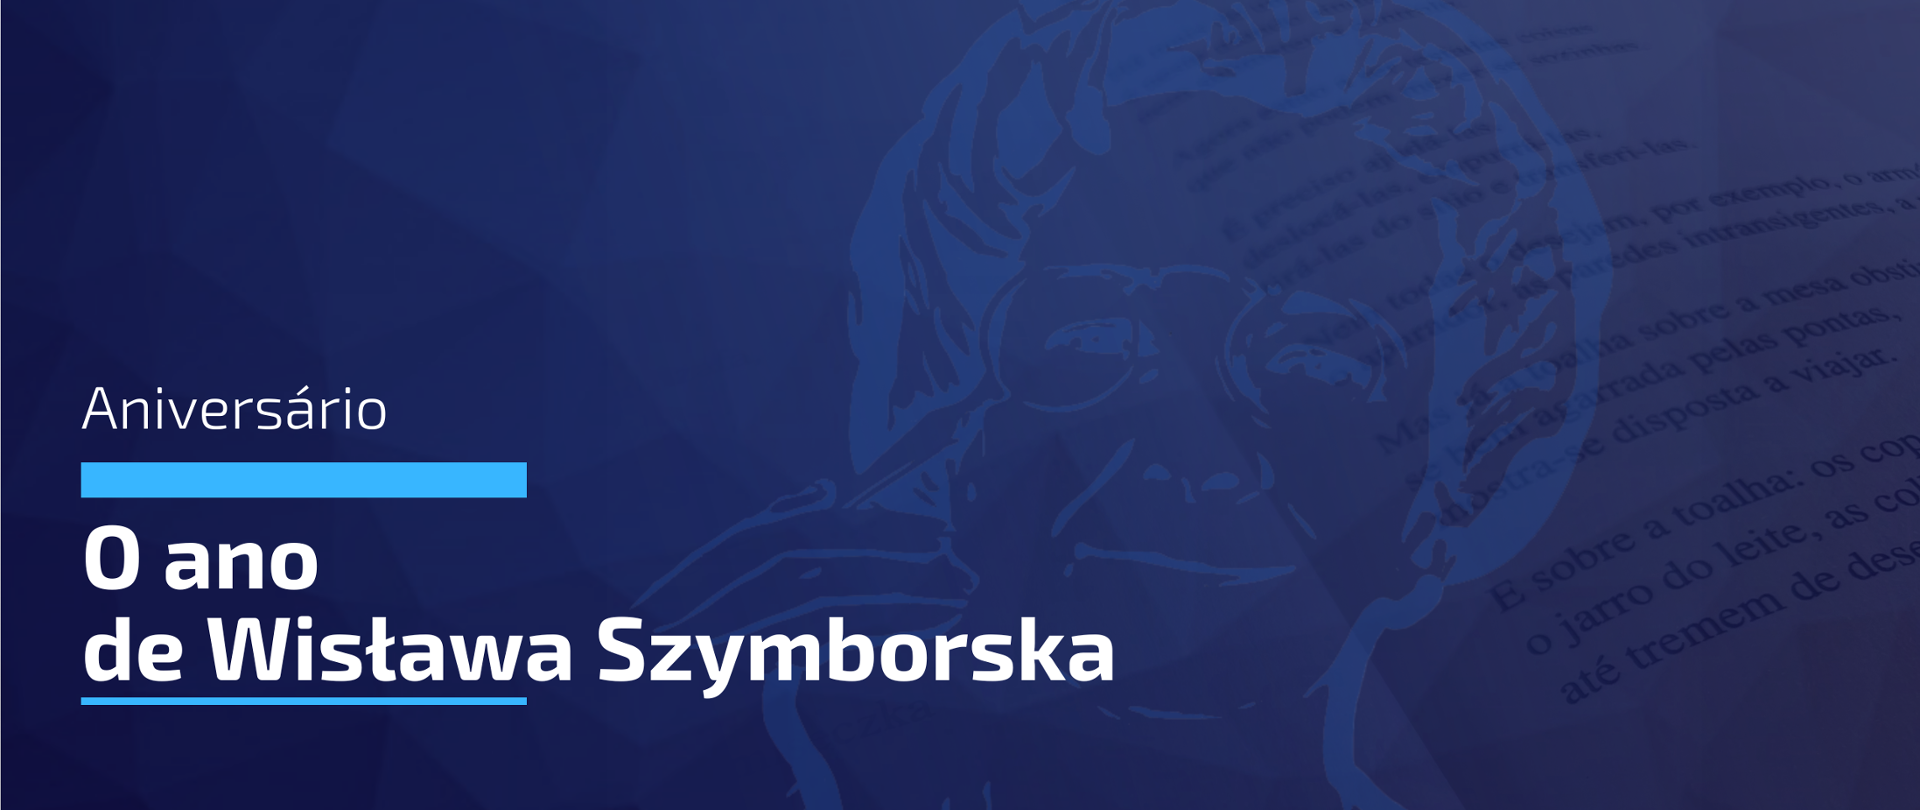 O ano de Wisława Szymborska